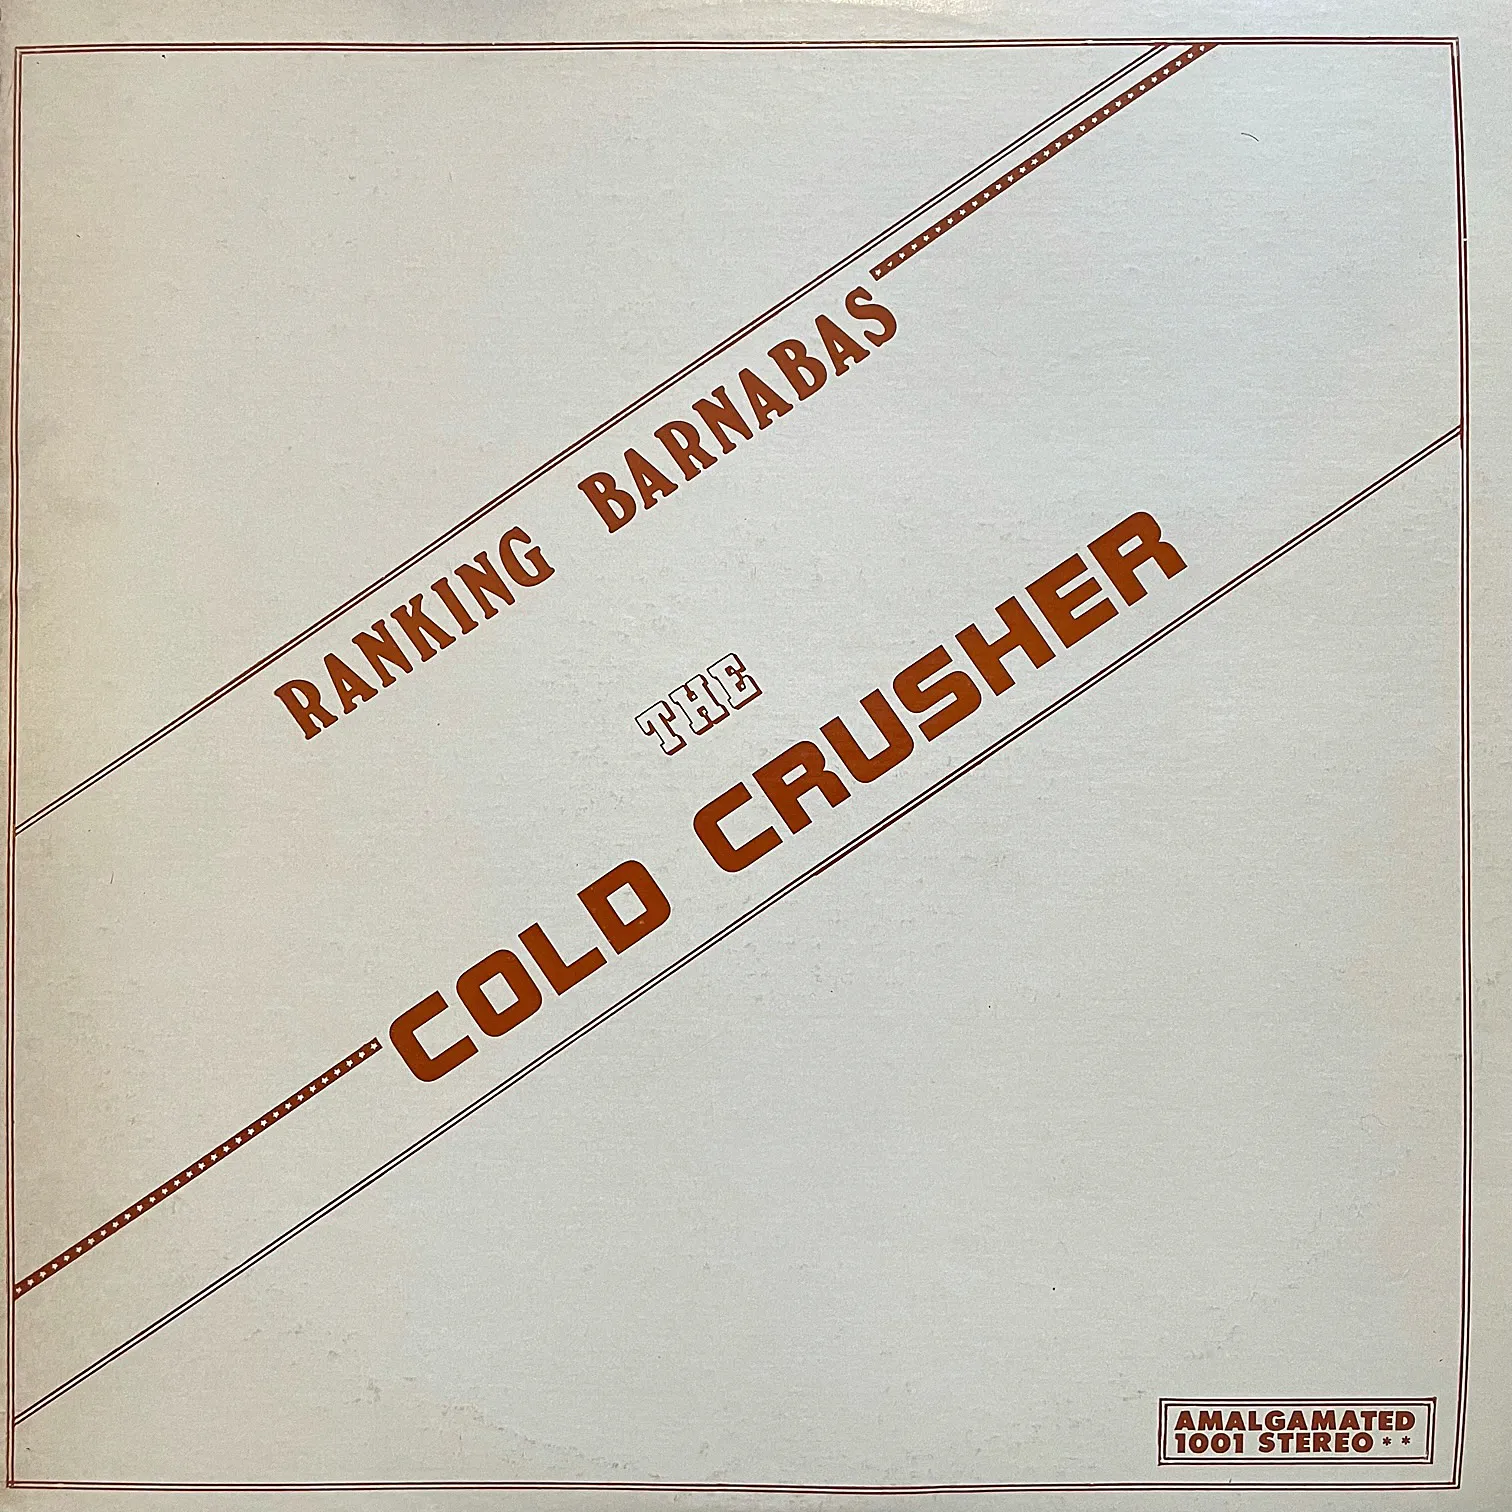 RANKING BARNABAS / COLD CRUSHERのアナログレコードジャケット (準備中)